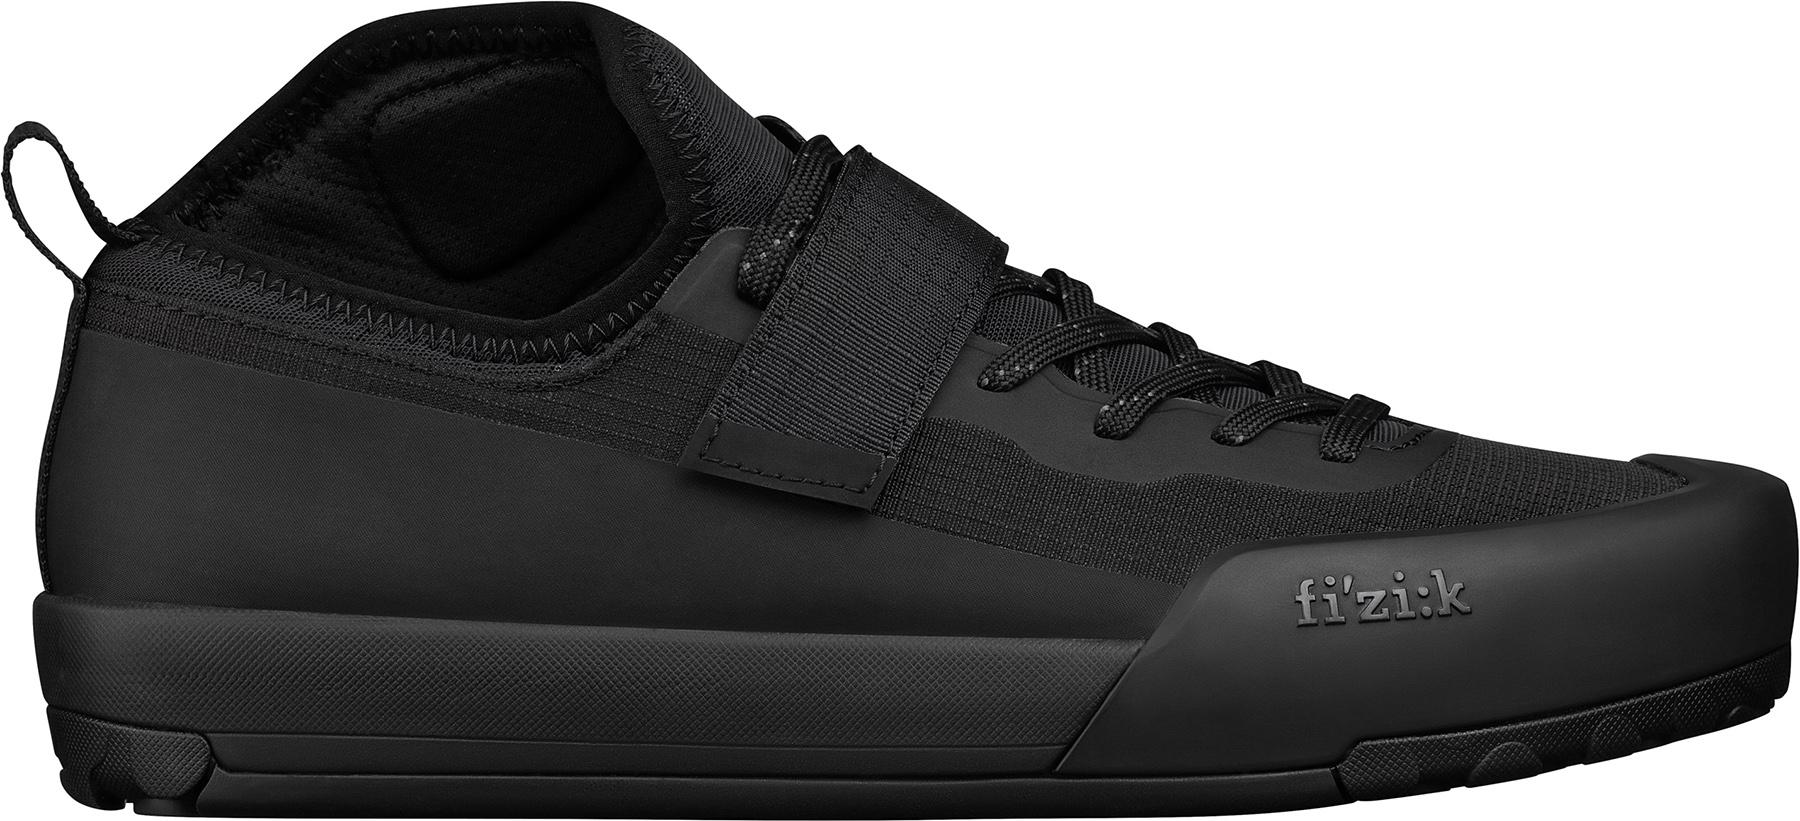 Fizik Gravita Tensor Clip Pedal Mtb Shoes - Black/black